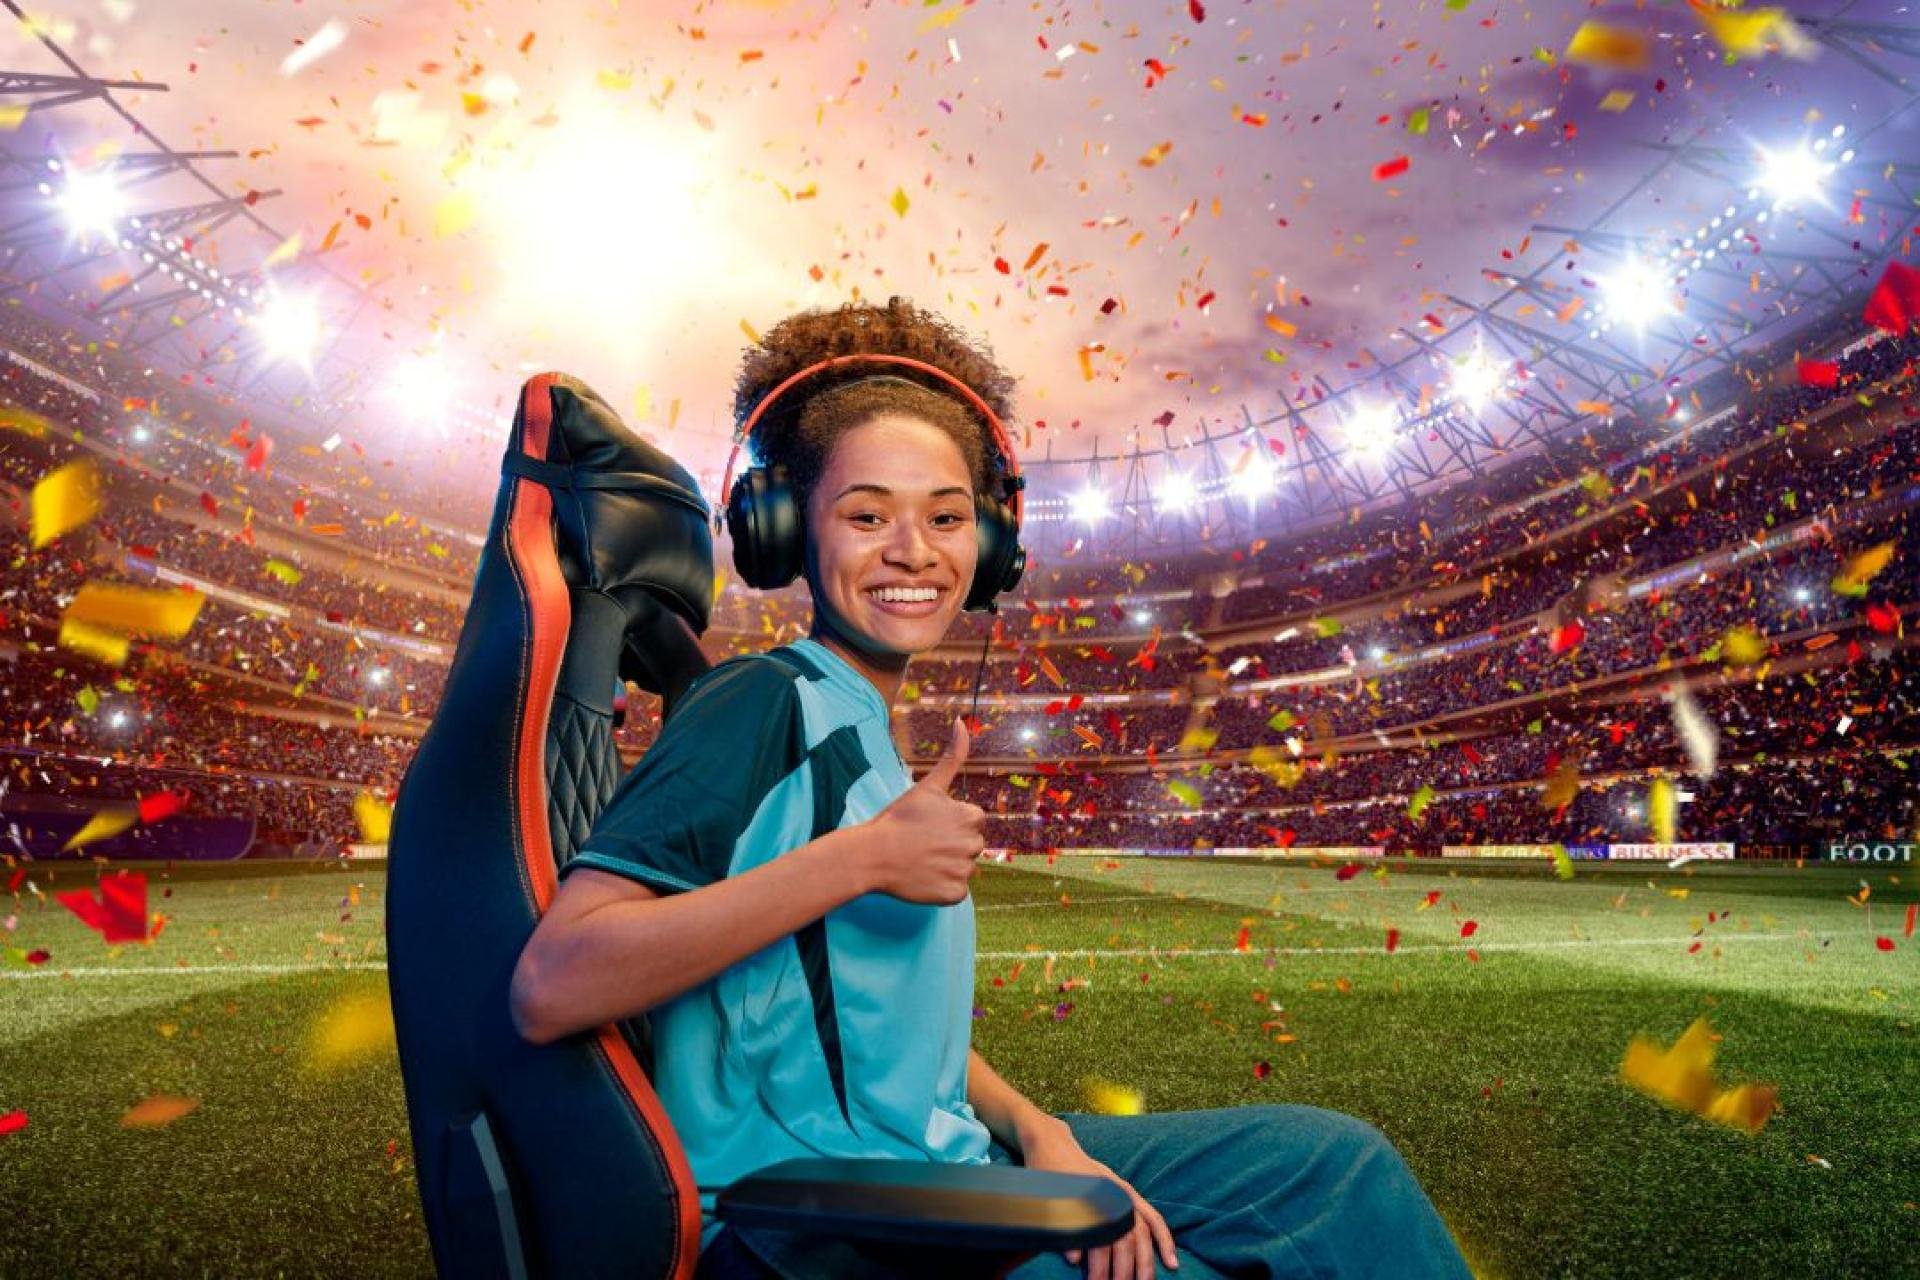 Meisje met koptelefoon op in gamersstoel voor een juichend stadion.